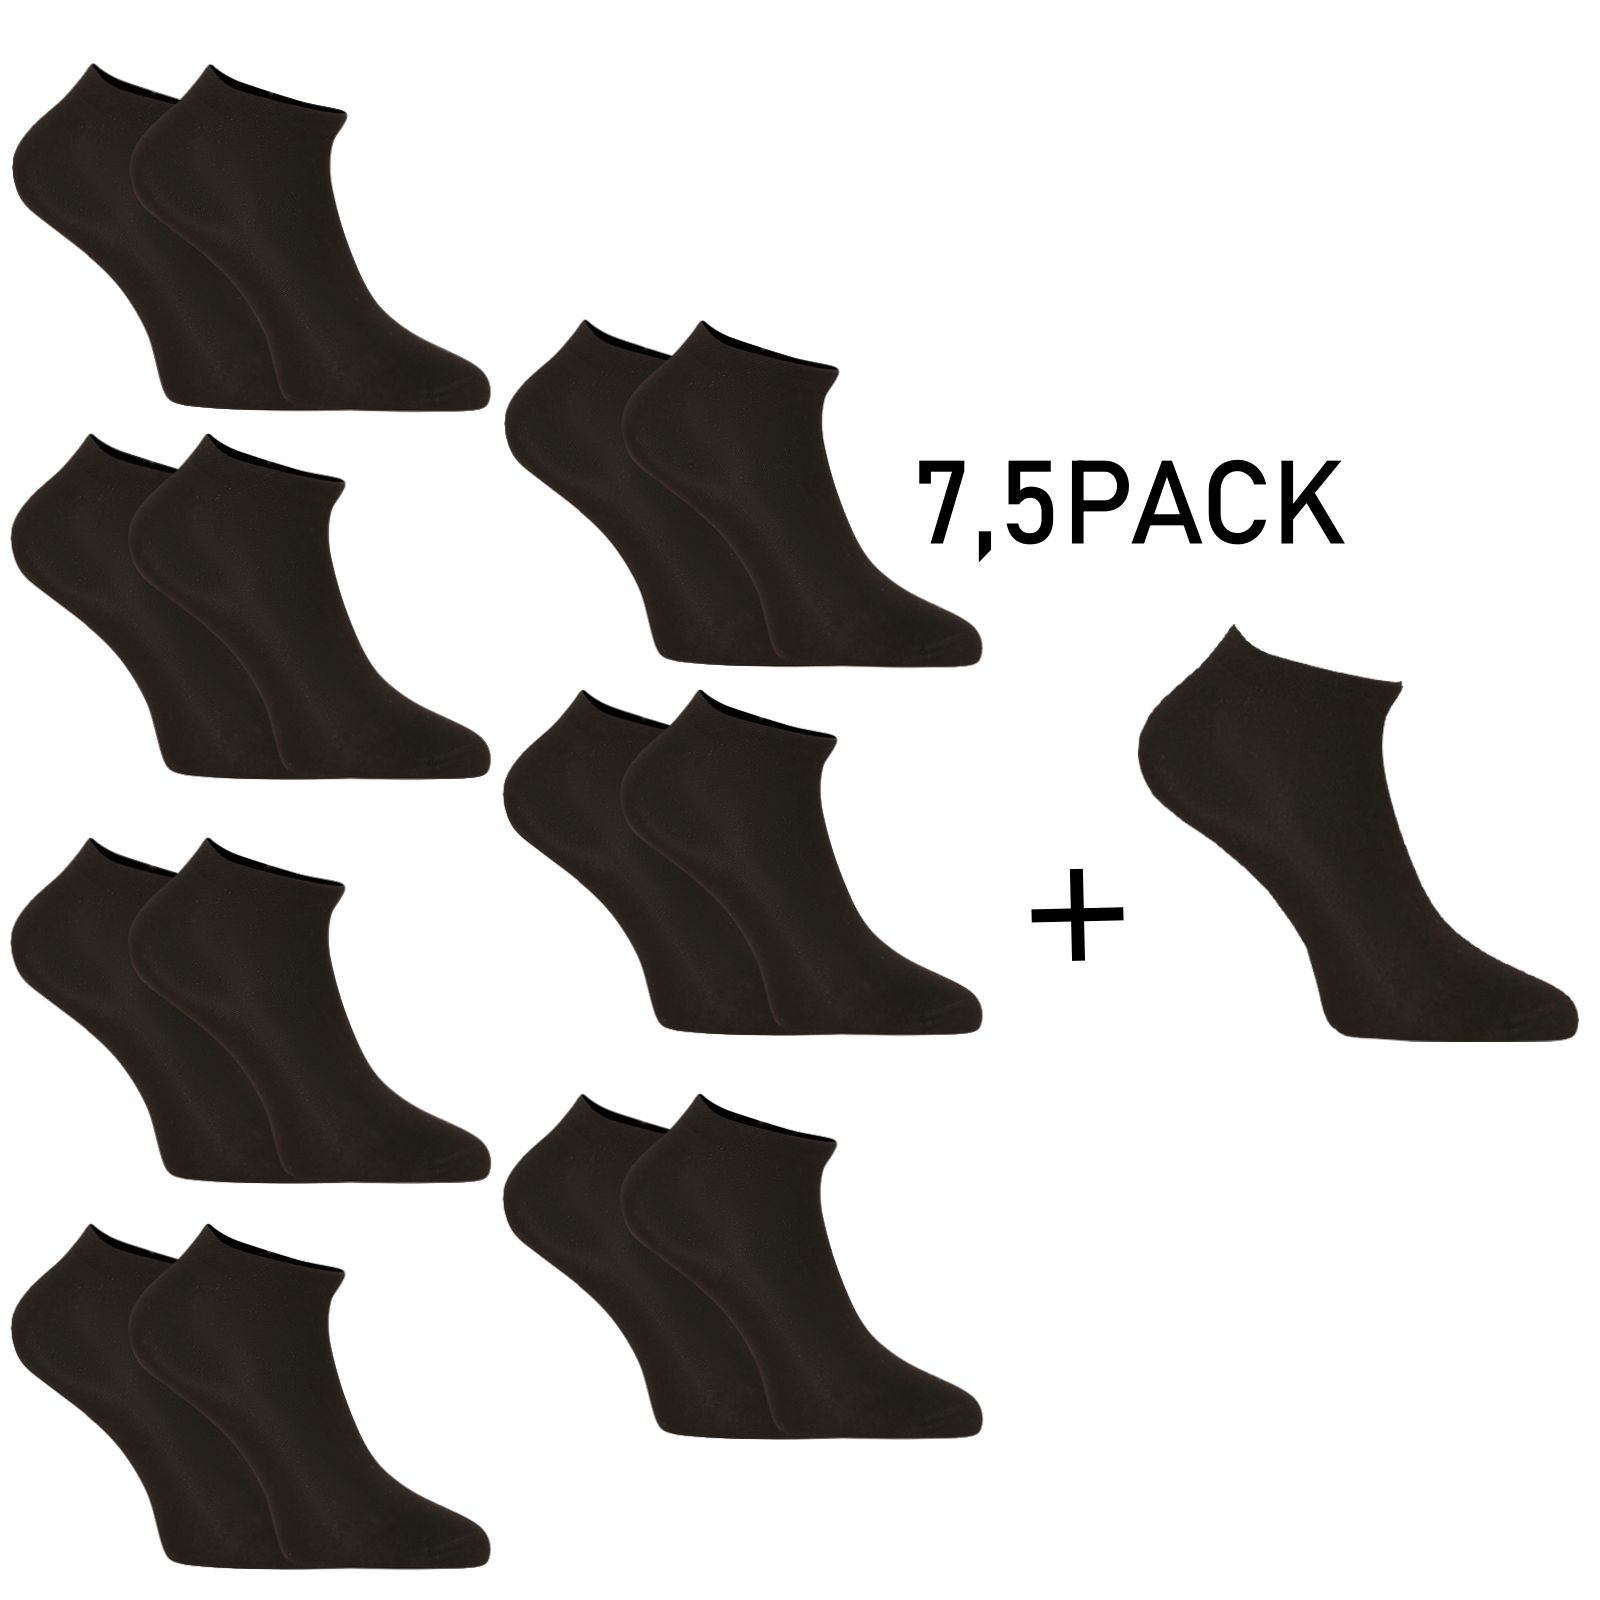 7,5PACK ponožky Nedeto nízké bambusové černé (75NPN001) M